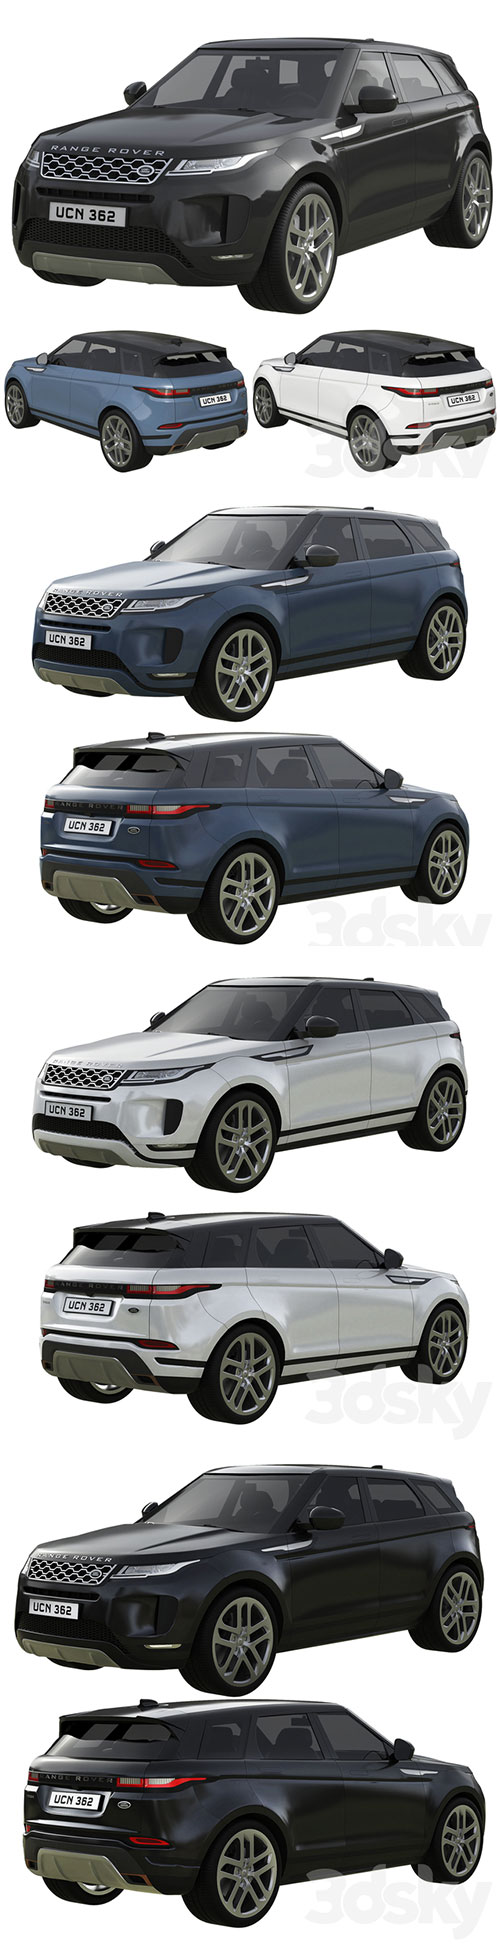 Range Rover Land Rover Evoque 3D Model